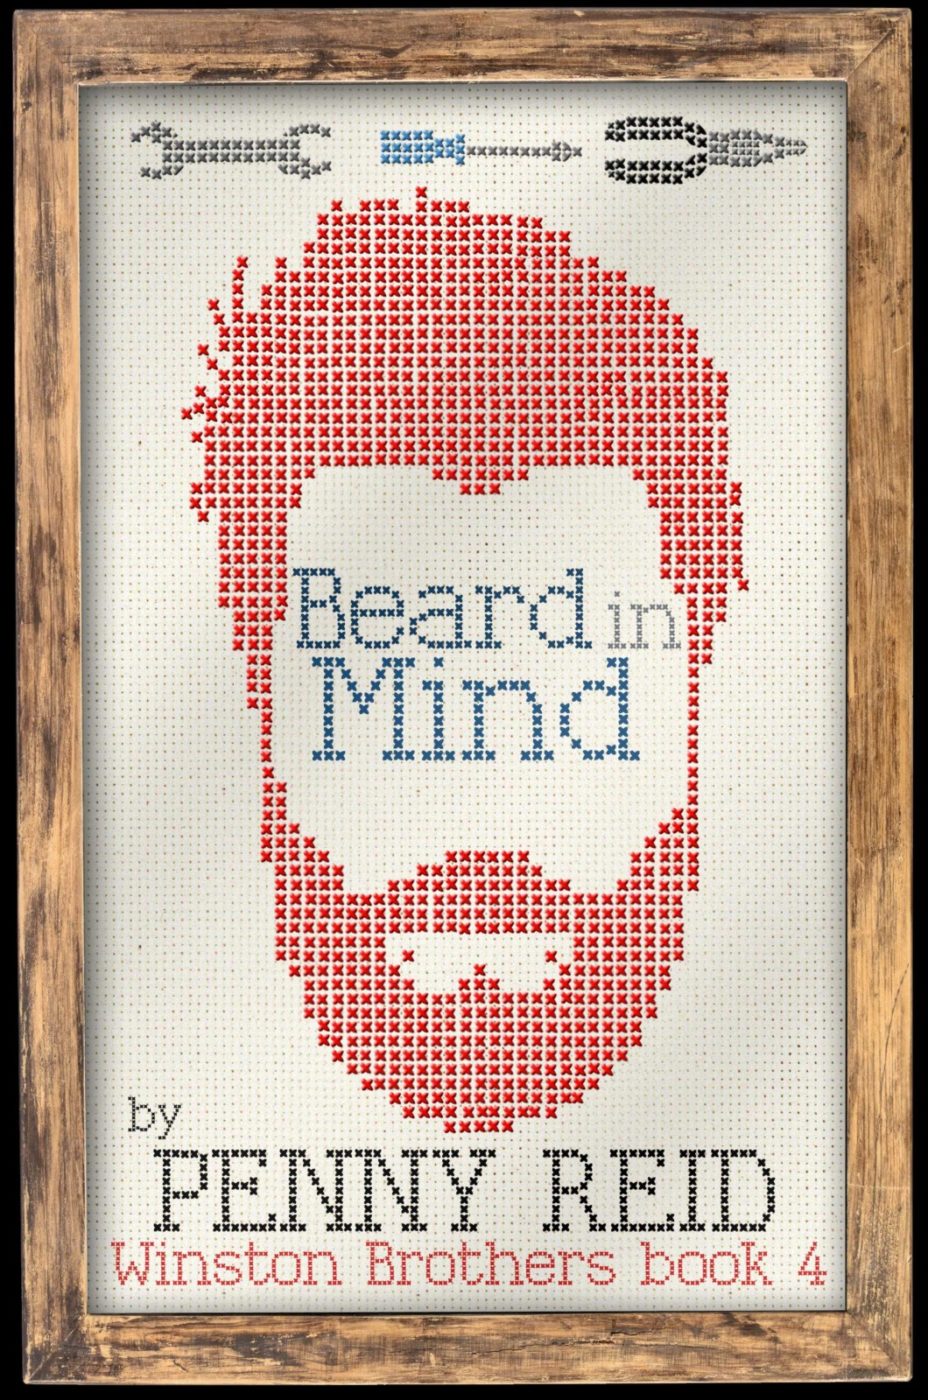 beard science penny reid